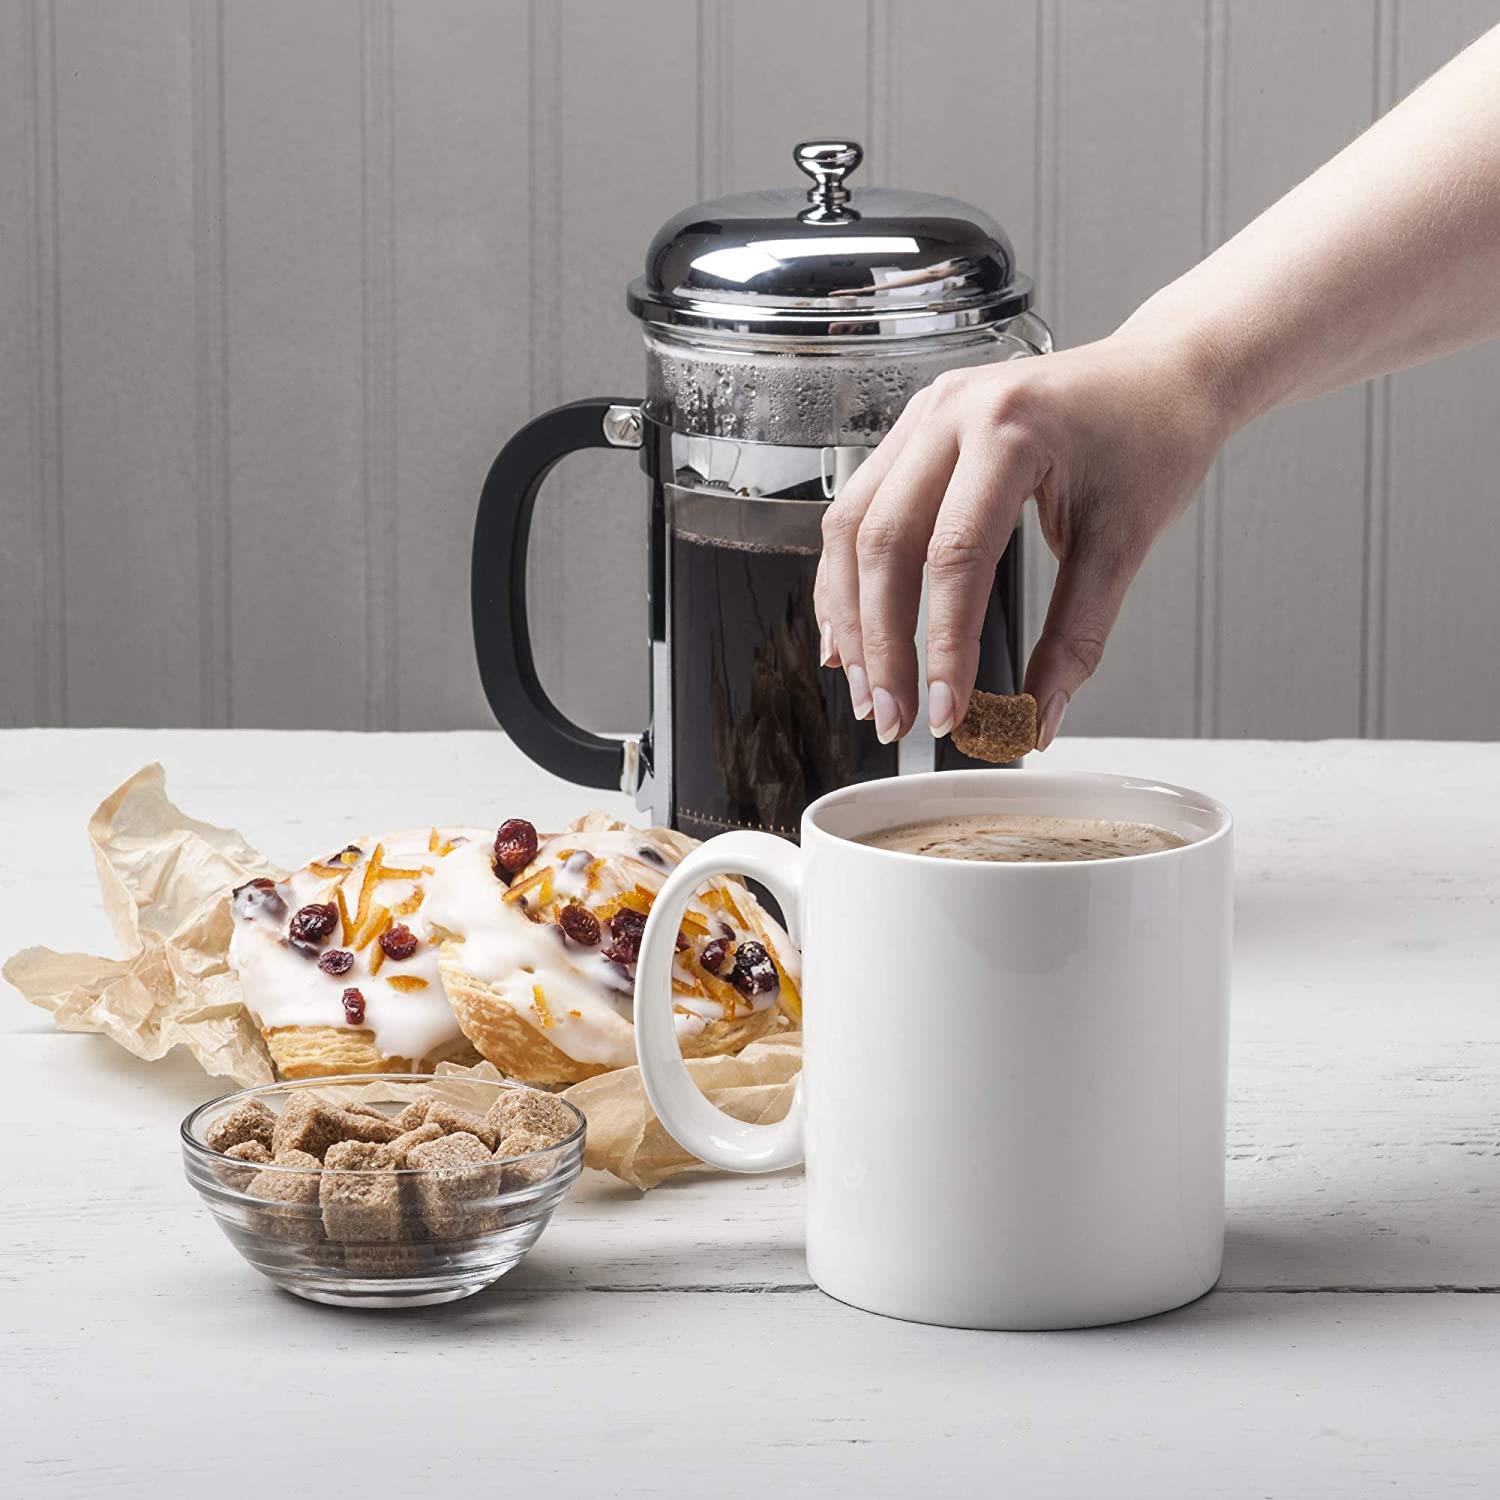 Extra Large Big Mug 1.3 Pint Coffee, Tea, Soup Chunky Mug, Porcelain White